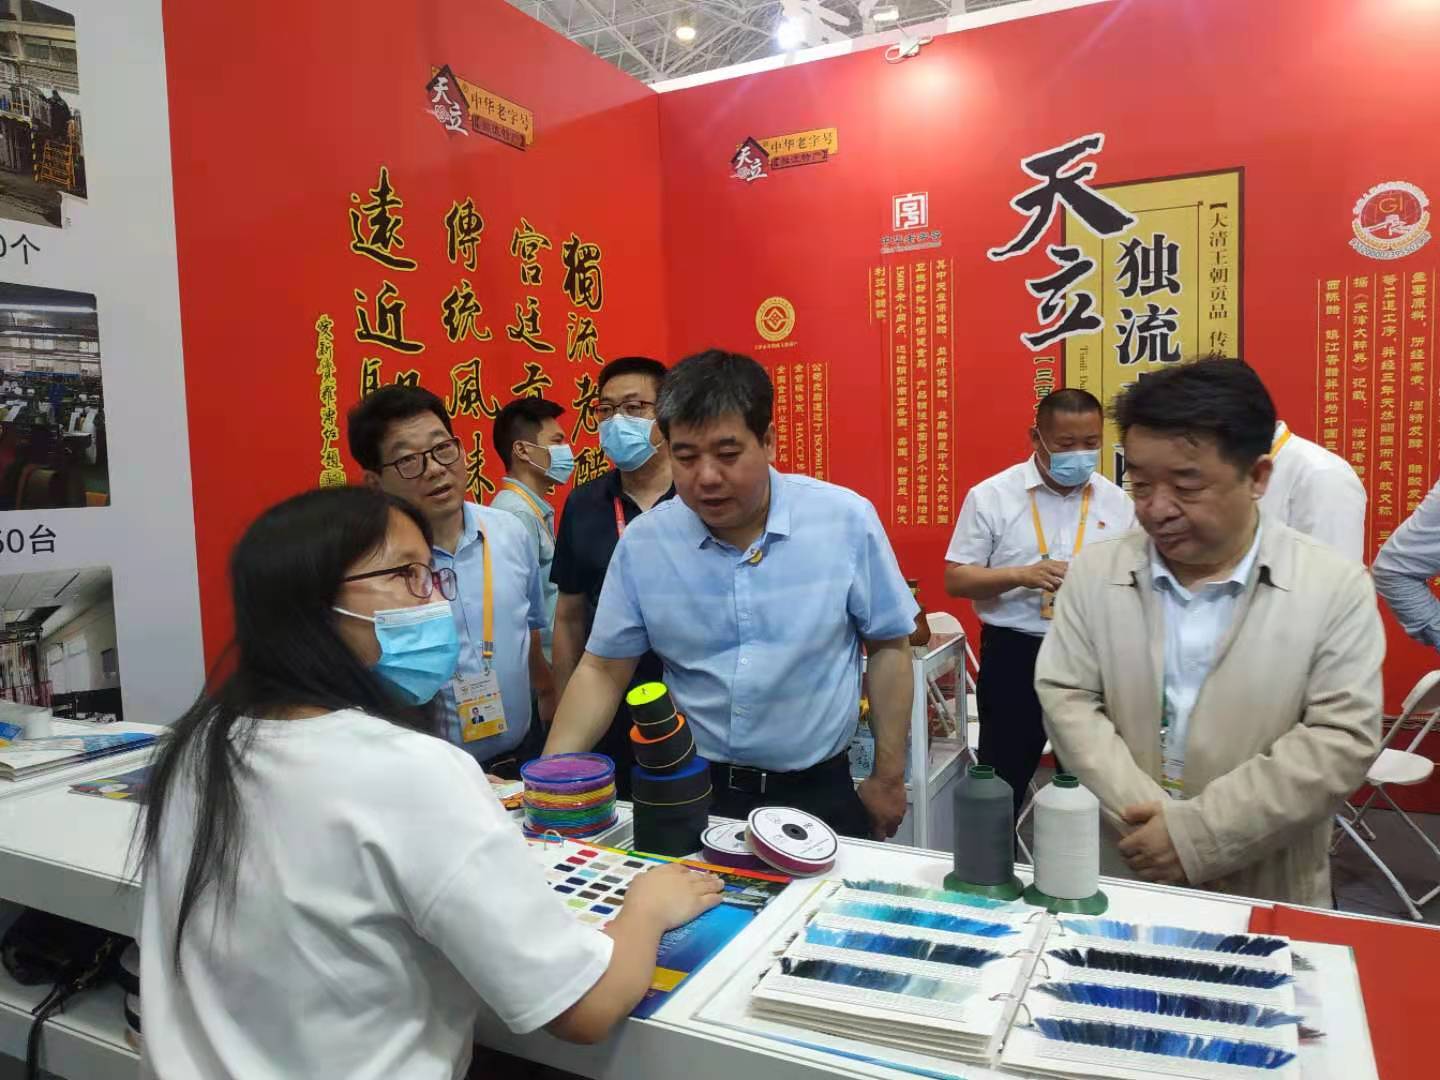 Expo Barang Konsumen Internasional China ini adalah 2021.5.7-2021.5.11